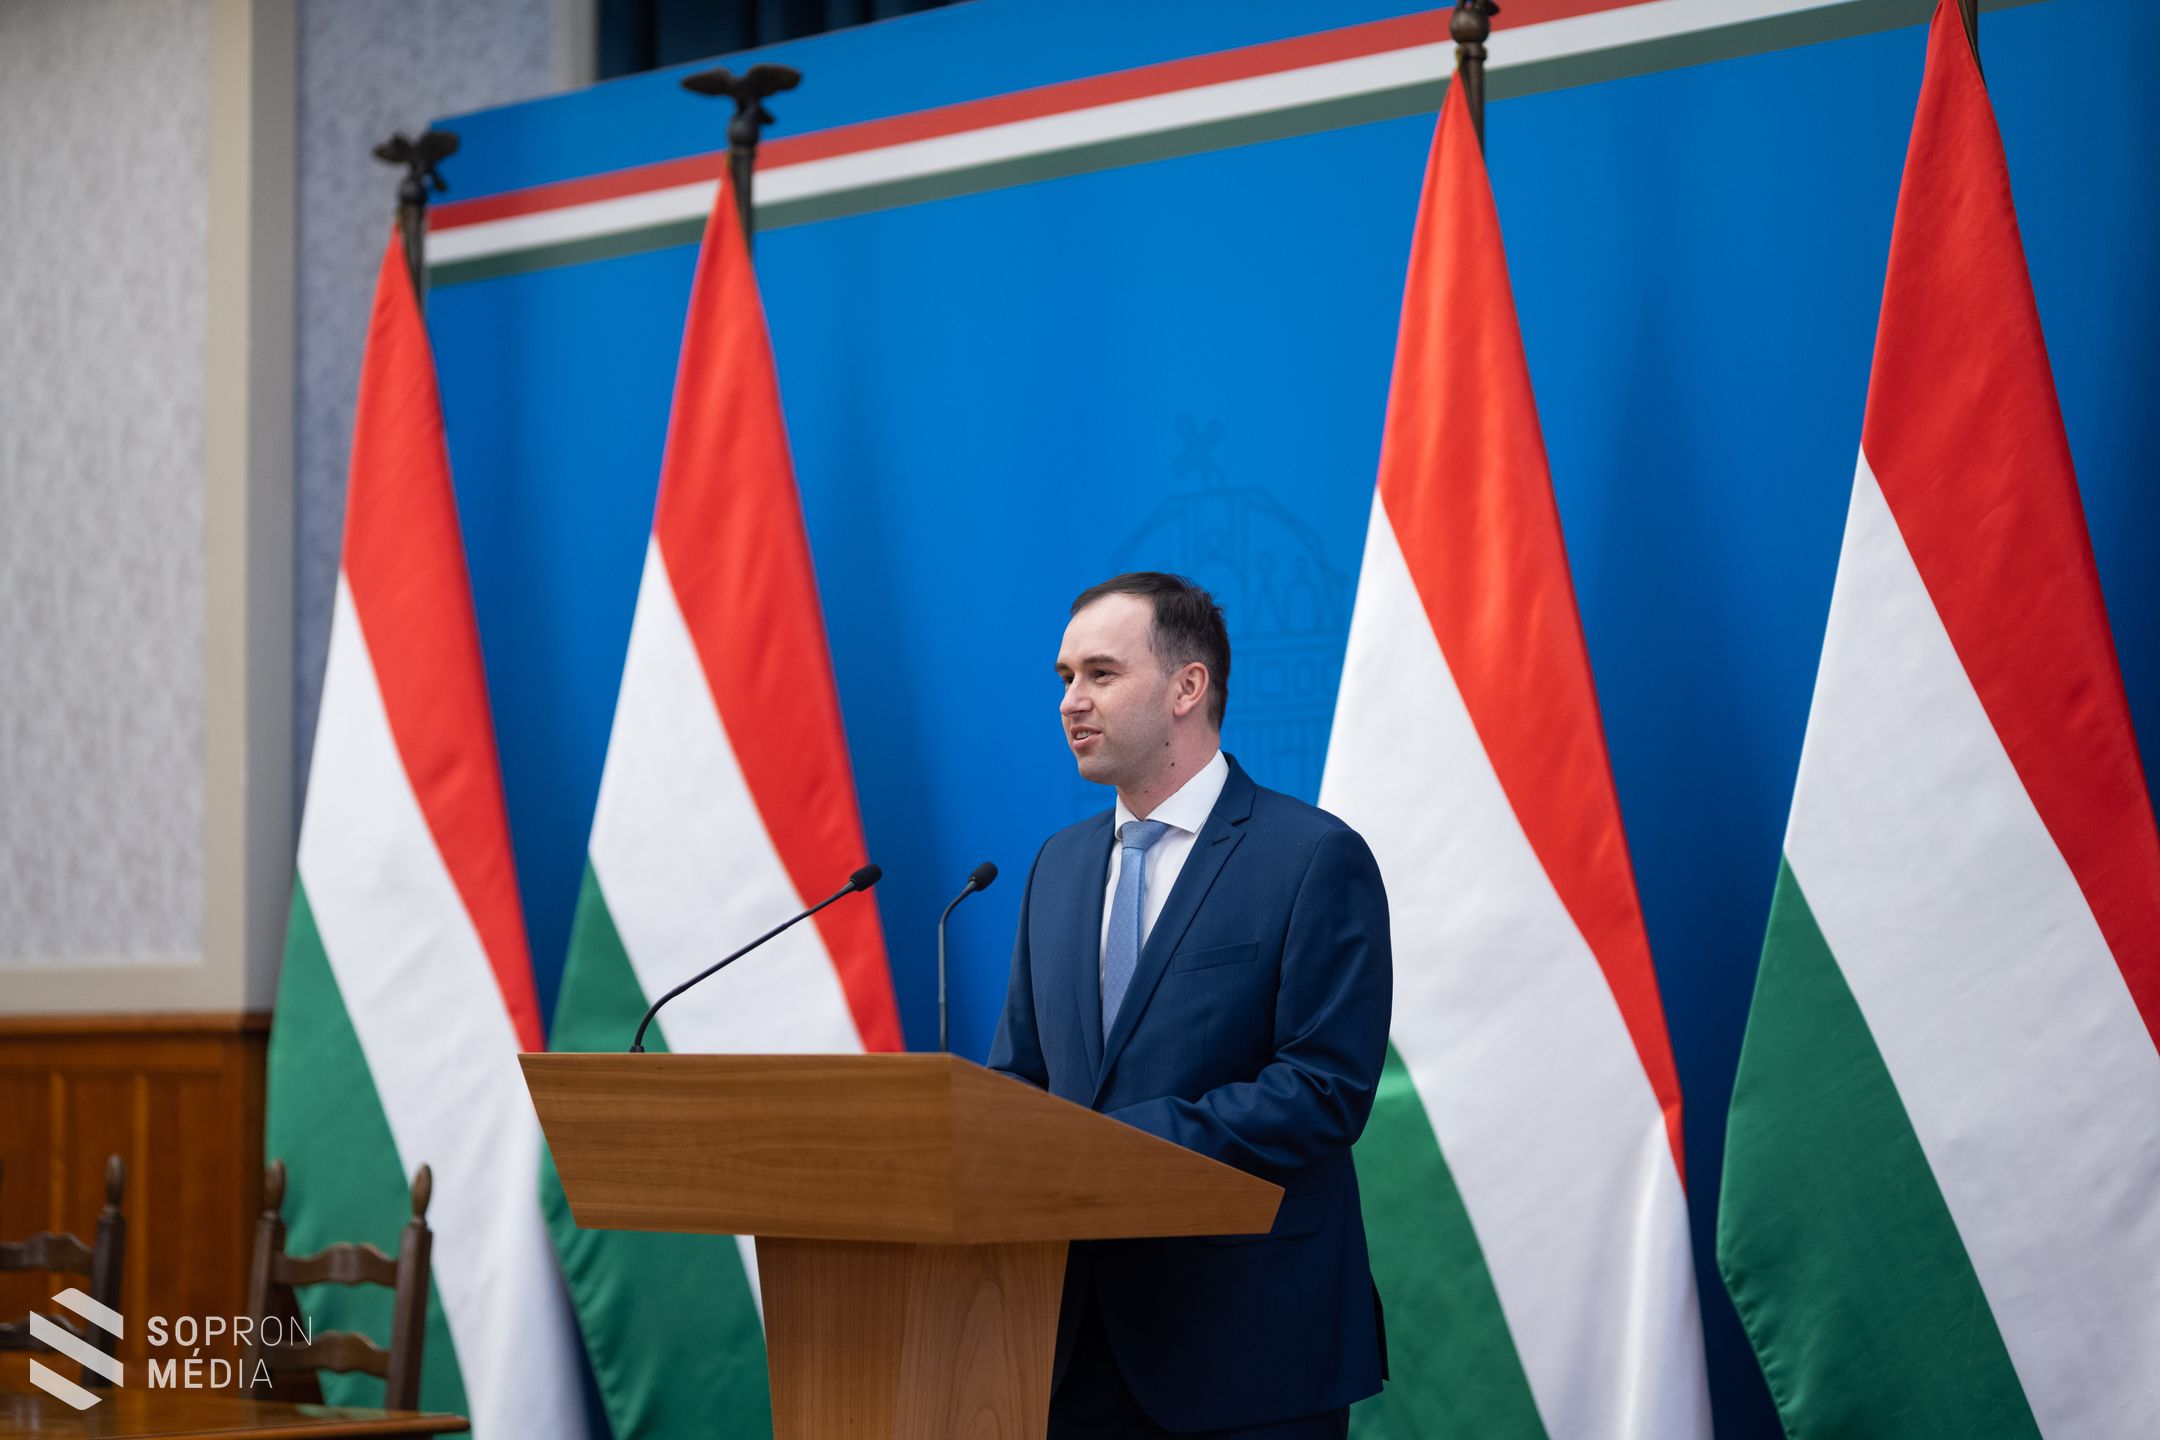 Stratégiai együttműködés a kormány és a sopronkövesdi Autoliv között